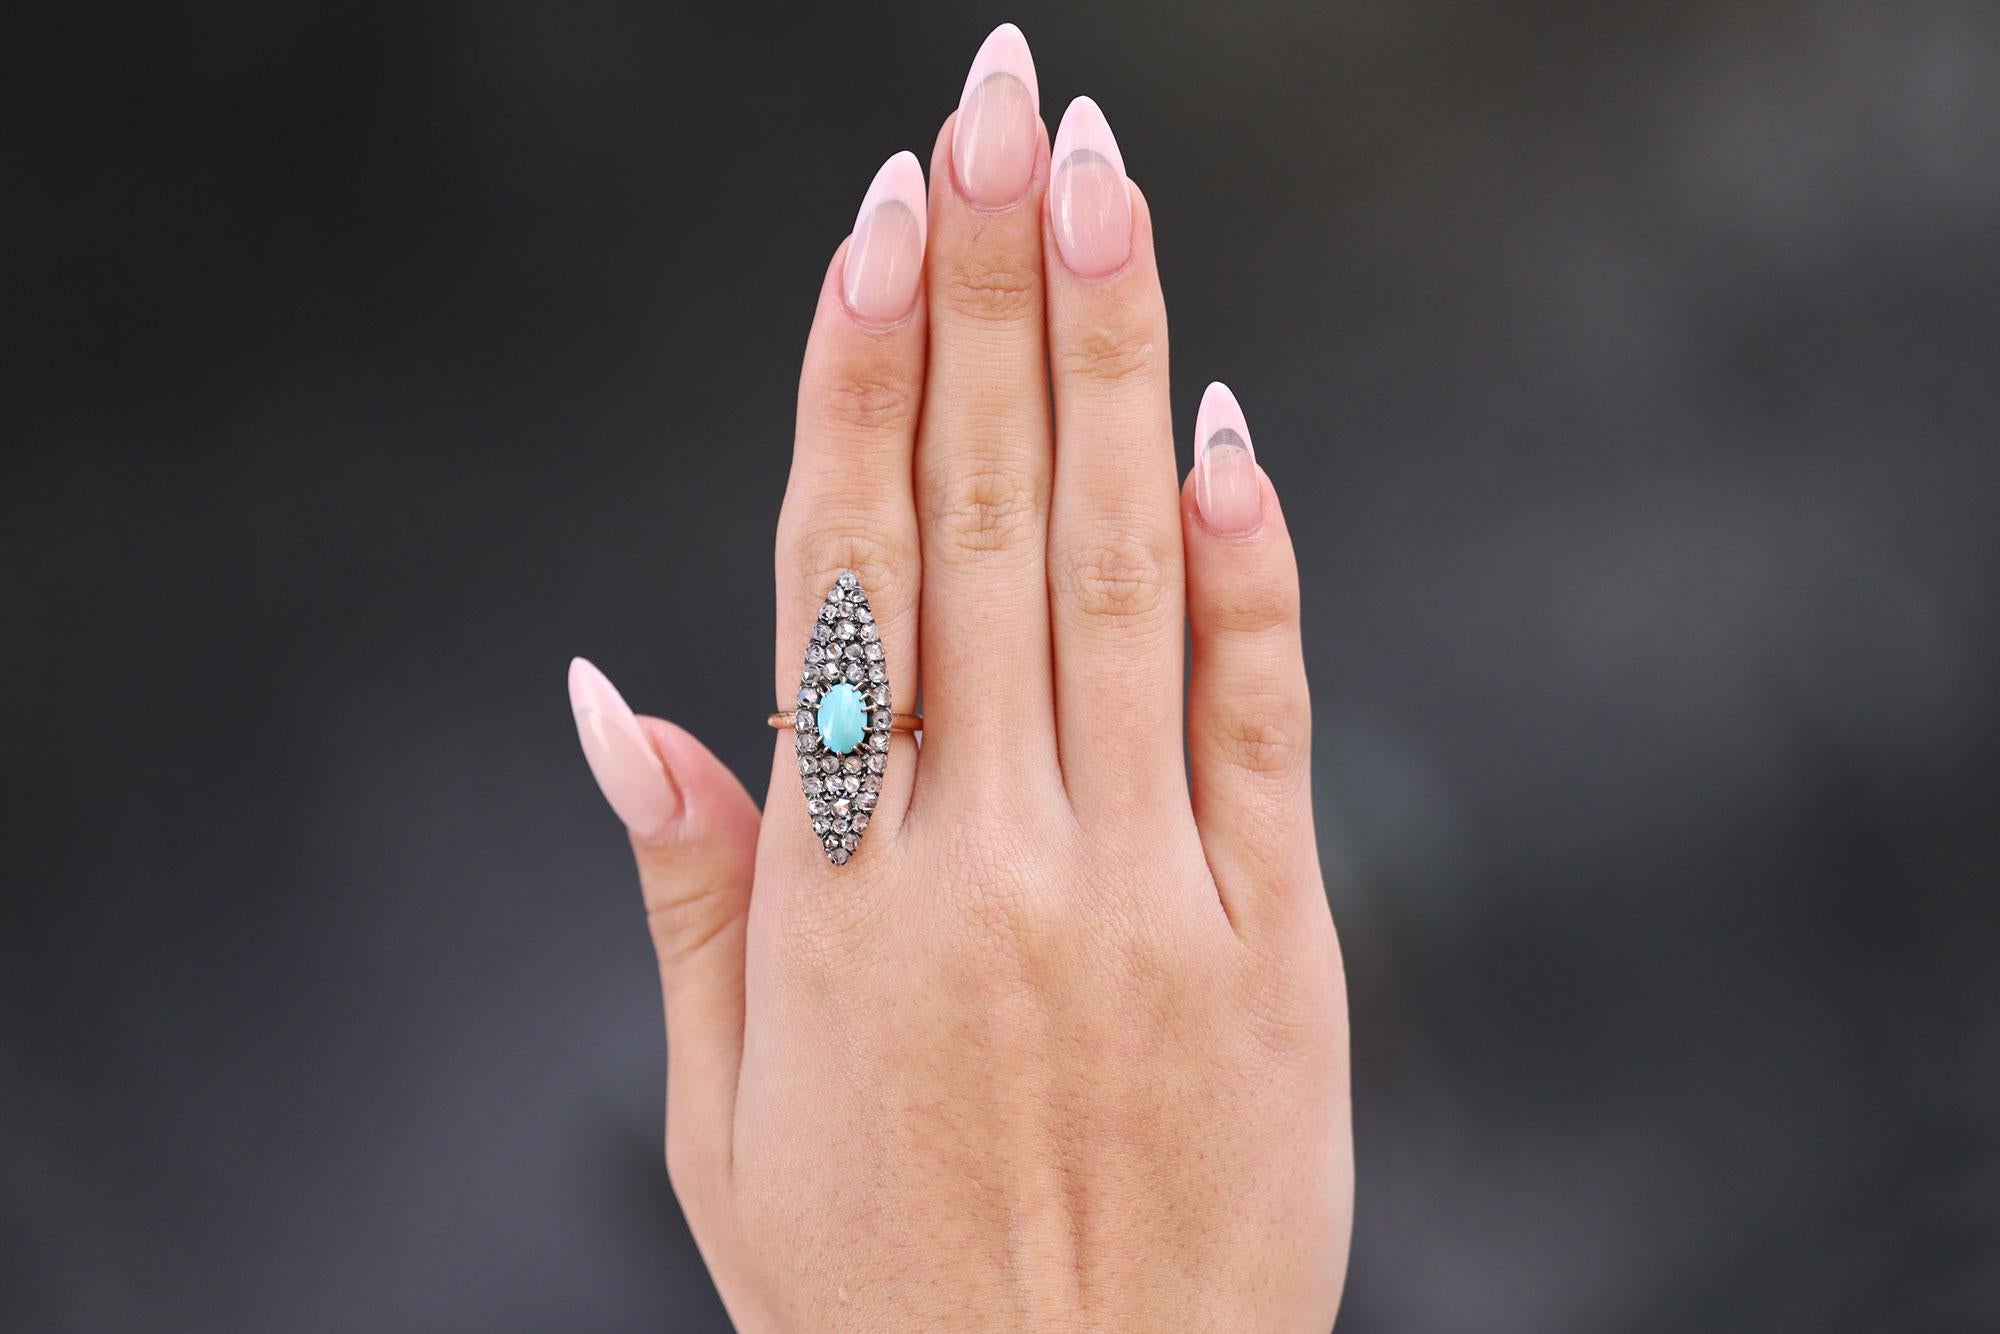 Ein lebhafter viktorianischer Vintage-Ring mit Diamanten und Türkisen, der lang, schlank und rank ist. Dieses Schmuckstück aus dem späten 19. Jahrhundert strotzt nur so vor Charme: Im Mittelpunkt steht ein auffälliger persischer Türkis von perfekter